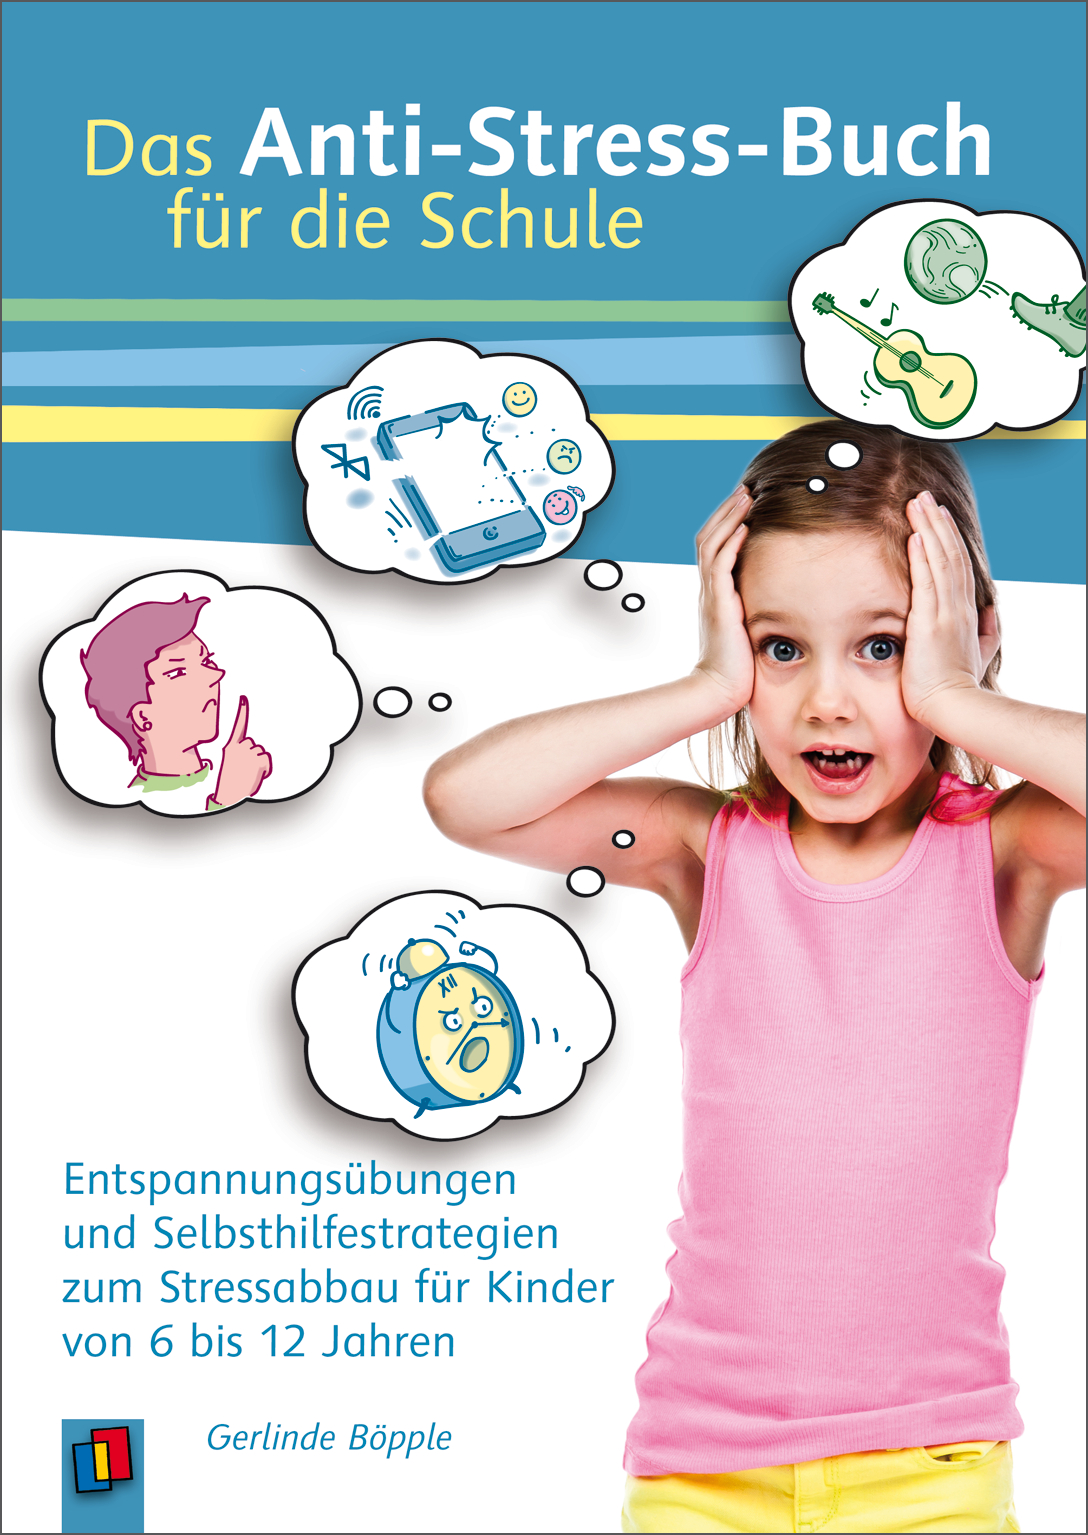 Das Anti-Stress-Buch Für Die Schule für Entspannungsübungen Mit Kindern In Der Schule